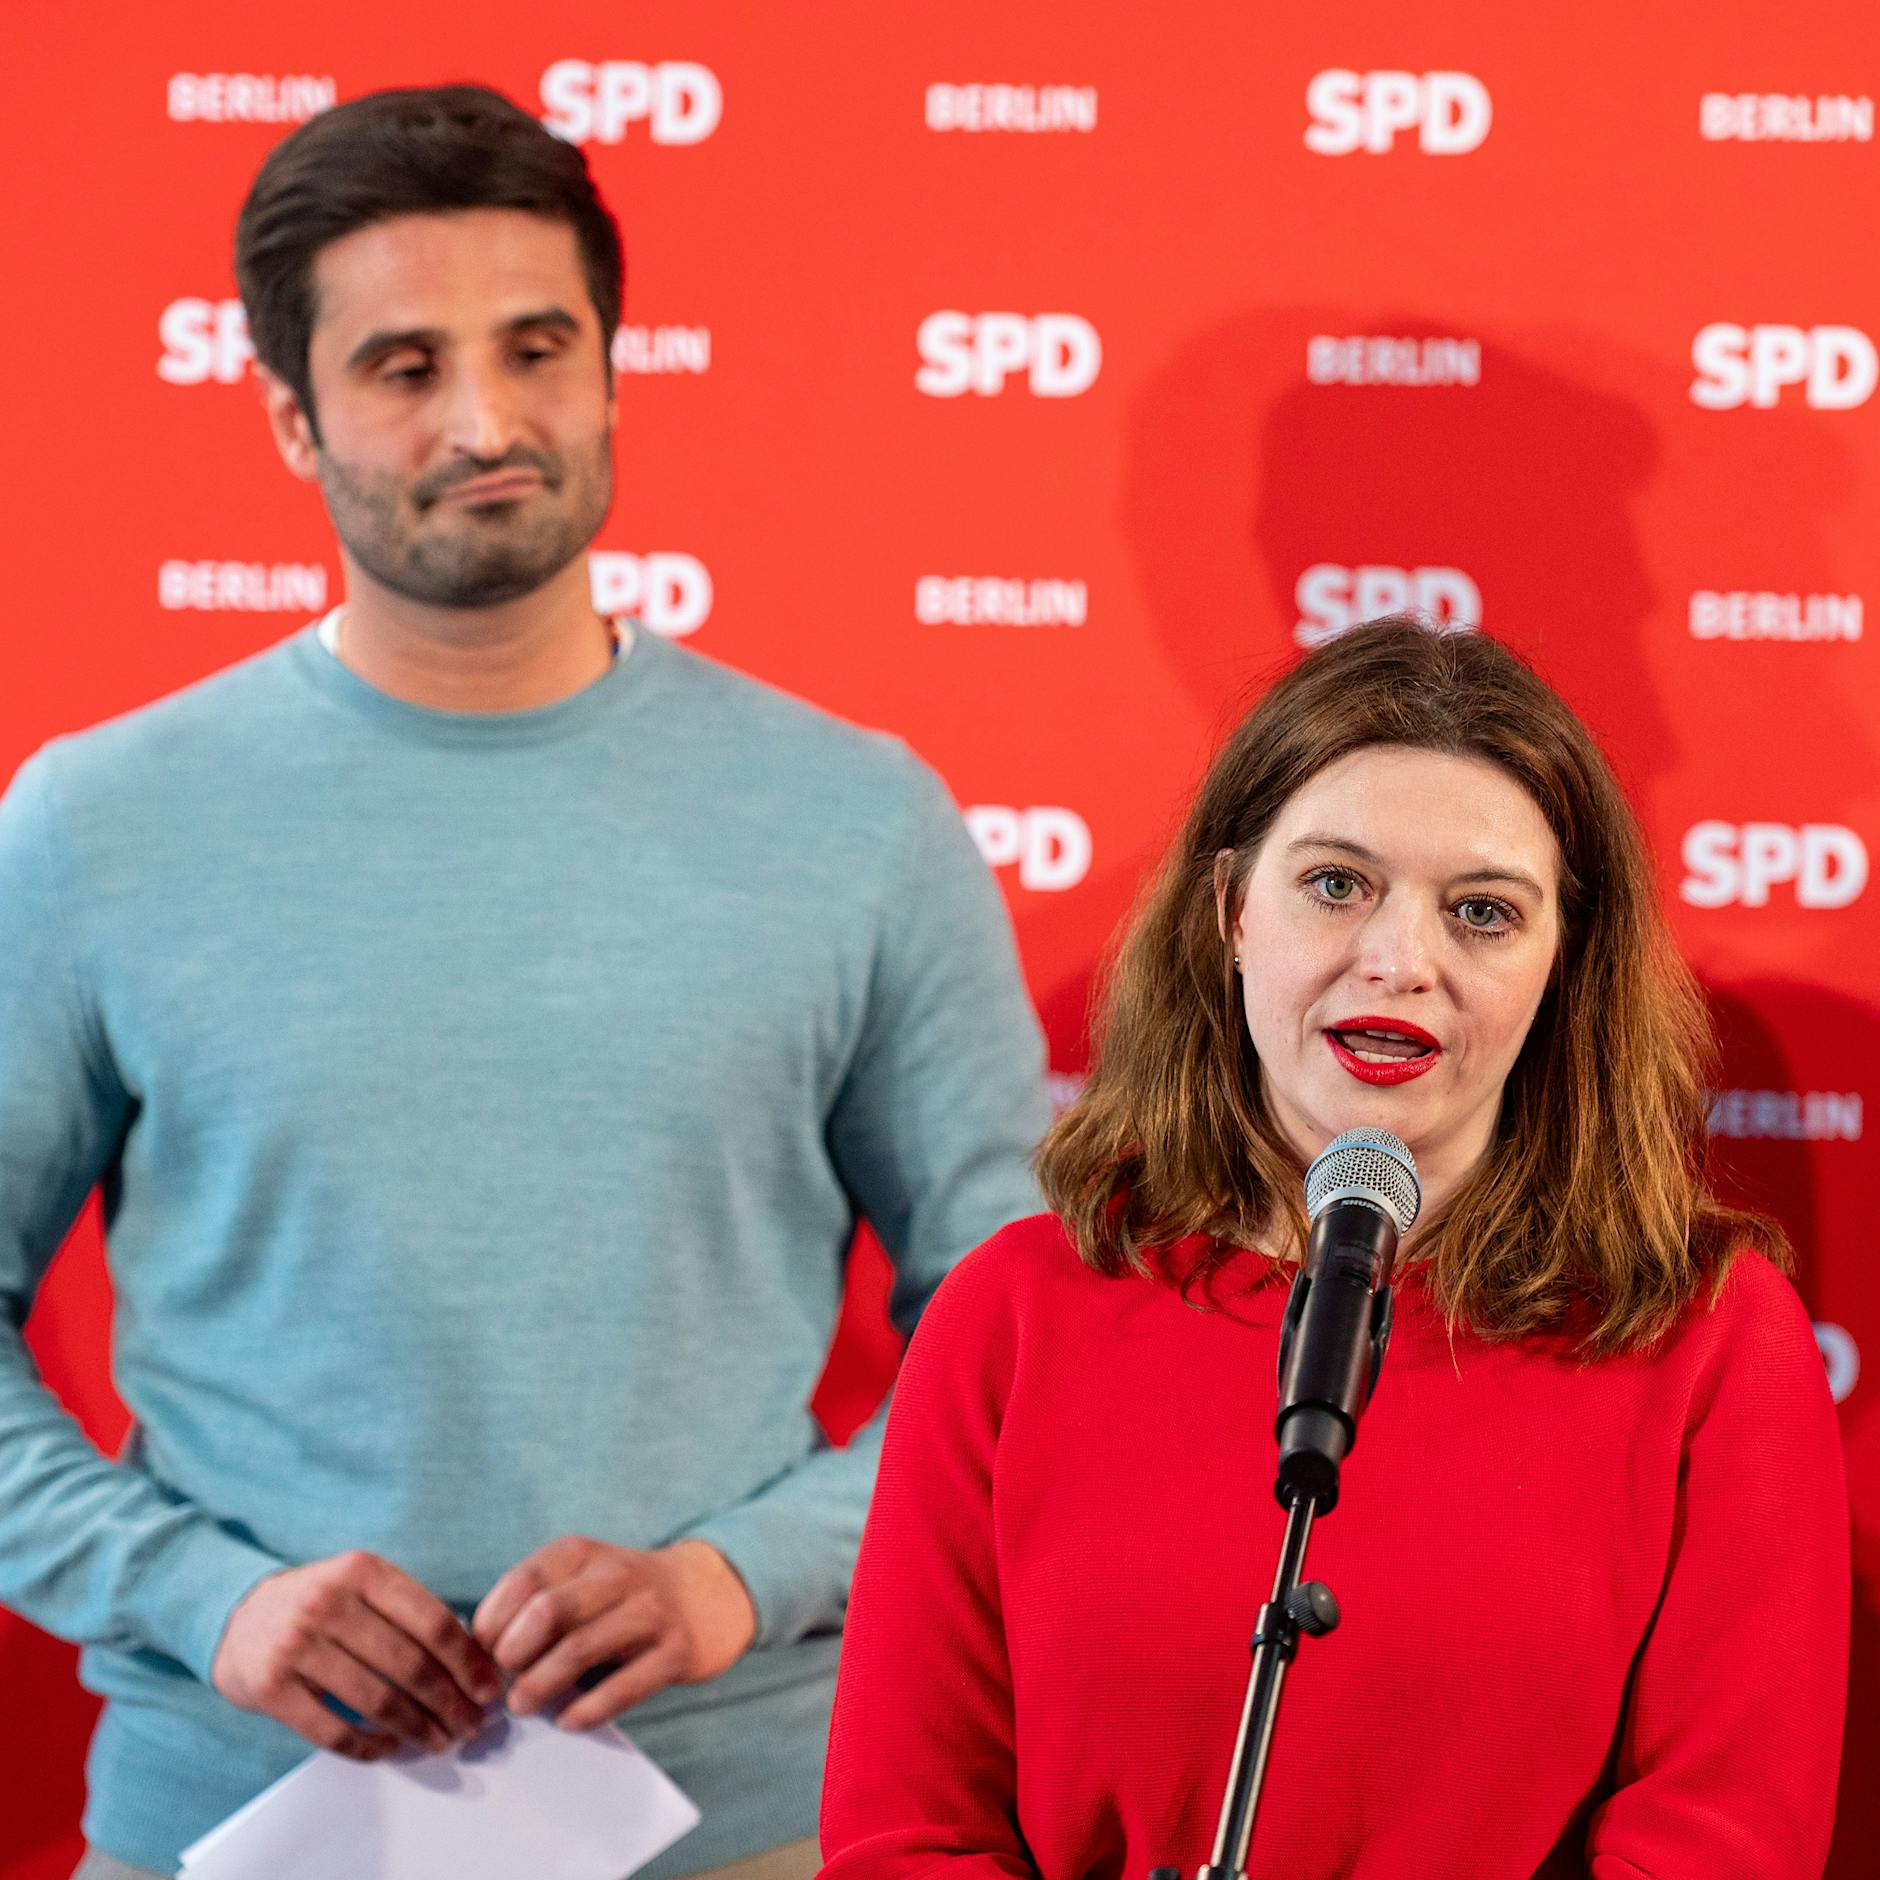 Plötzlicher Gedächtnisverlust? Berliner SPD-Kandidatin war in der CDU – und verschwieg es